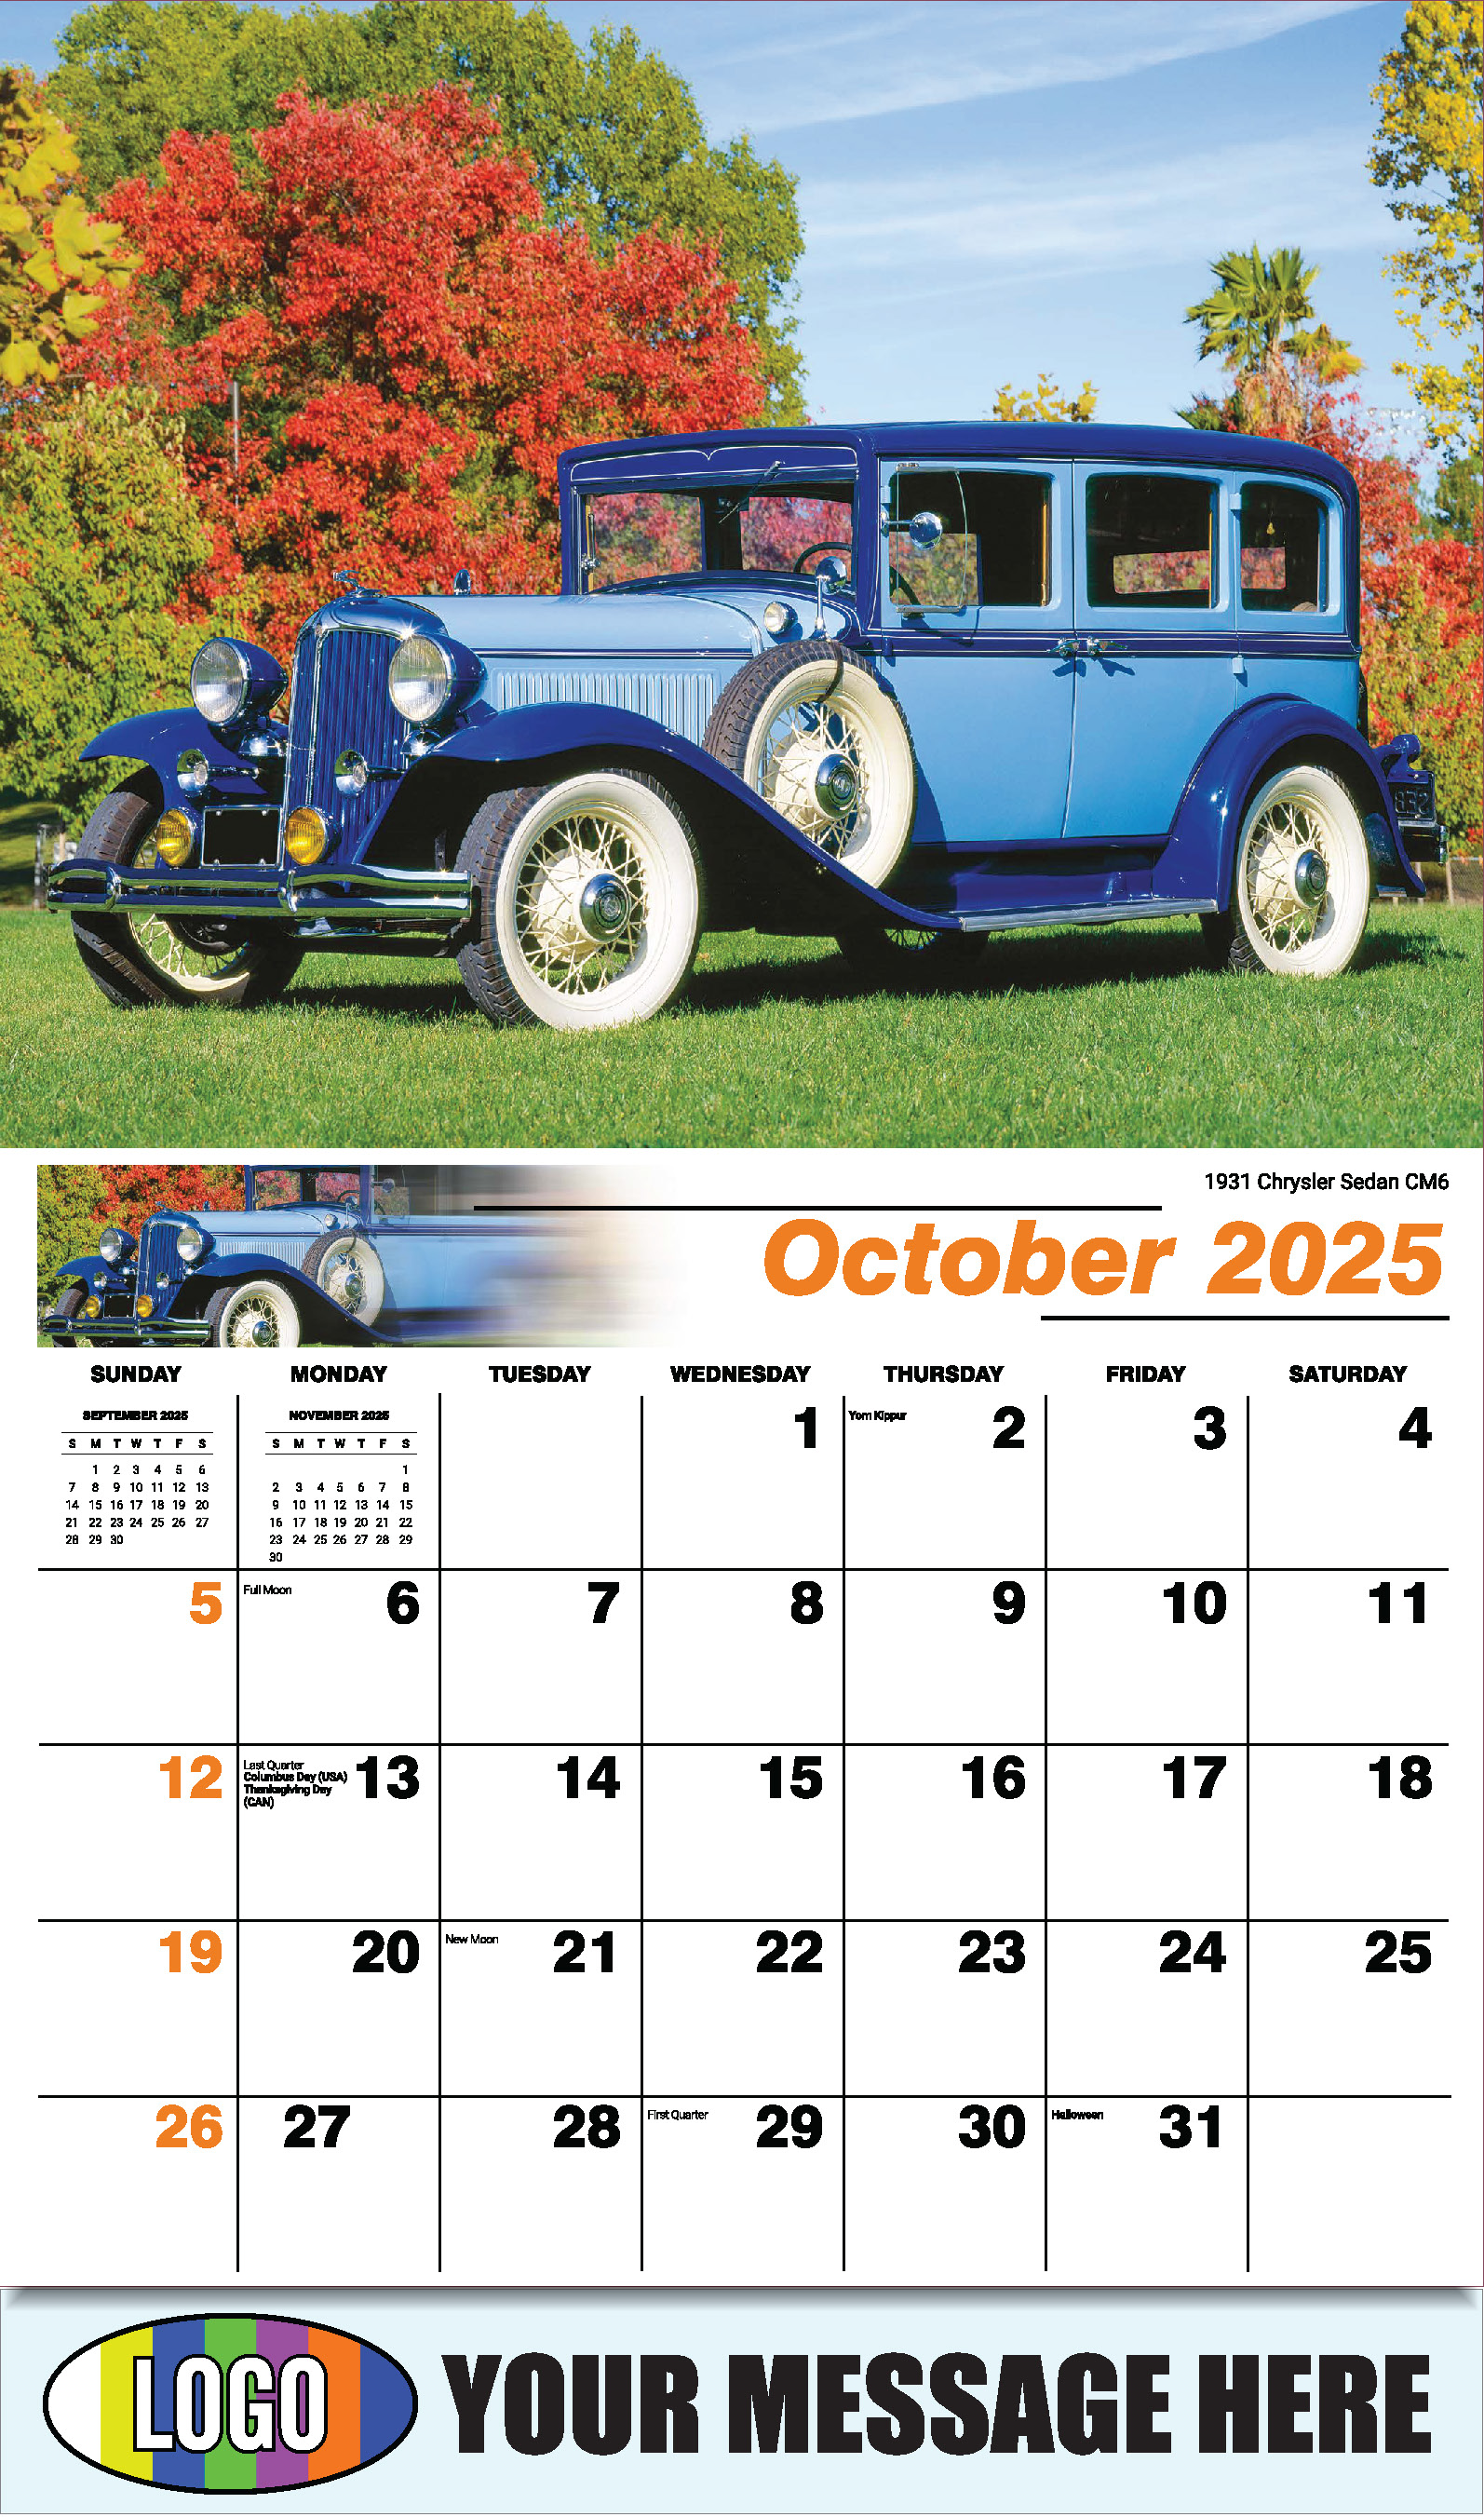 Classic Cars 2025 Automotive Business Promo Calendar - October